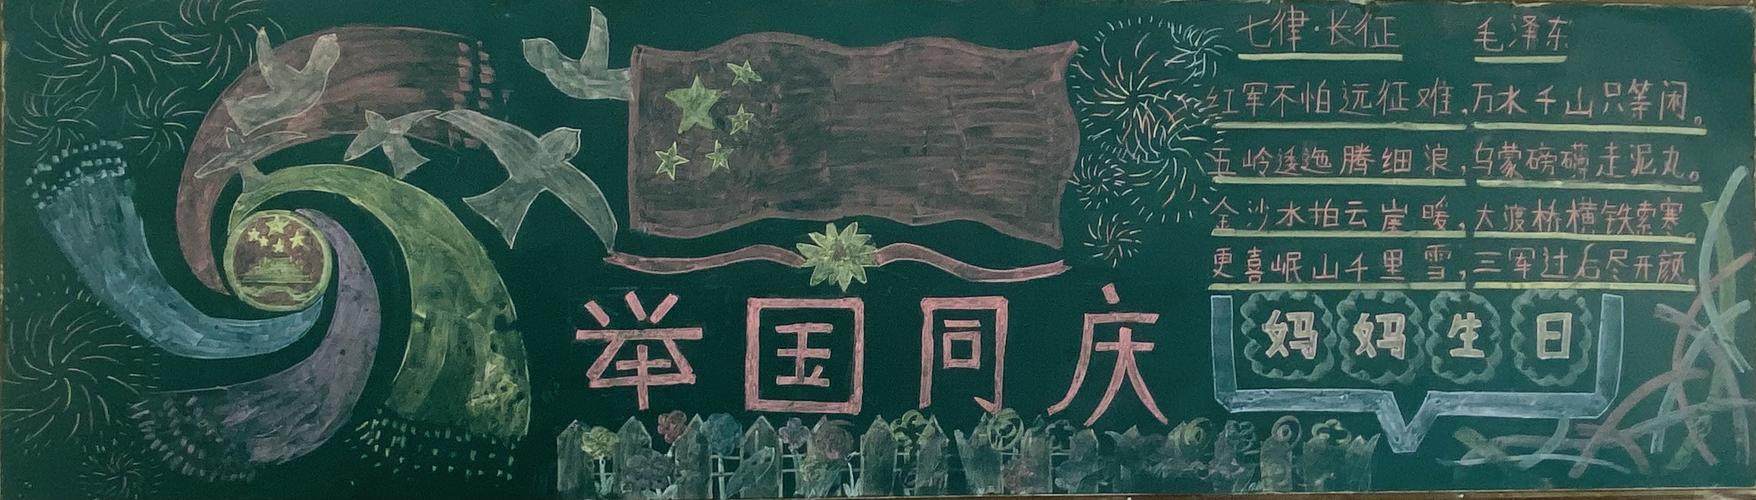 各班级集思广益发挥自己的特长制作出一幅幅精美的黑板报作品 中国